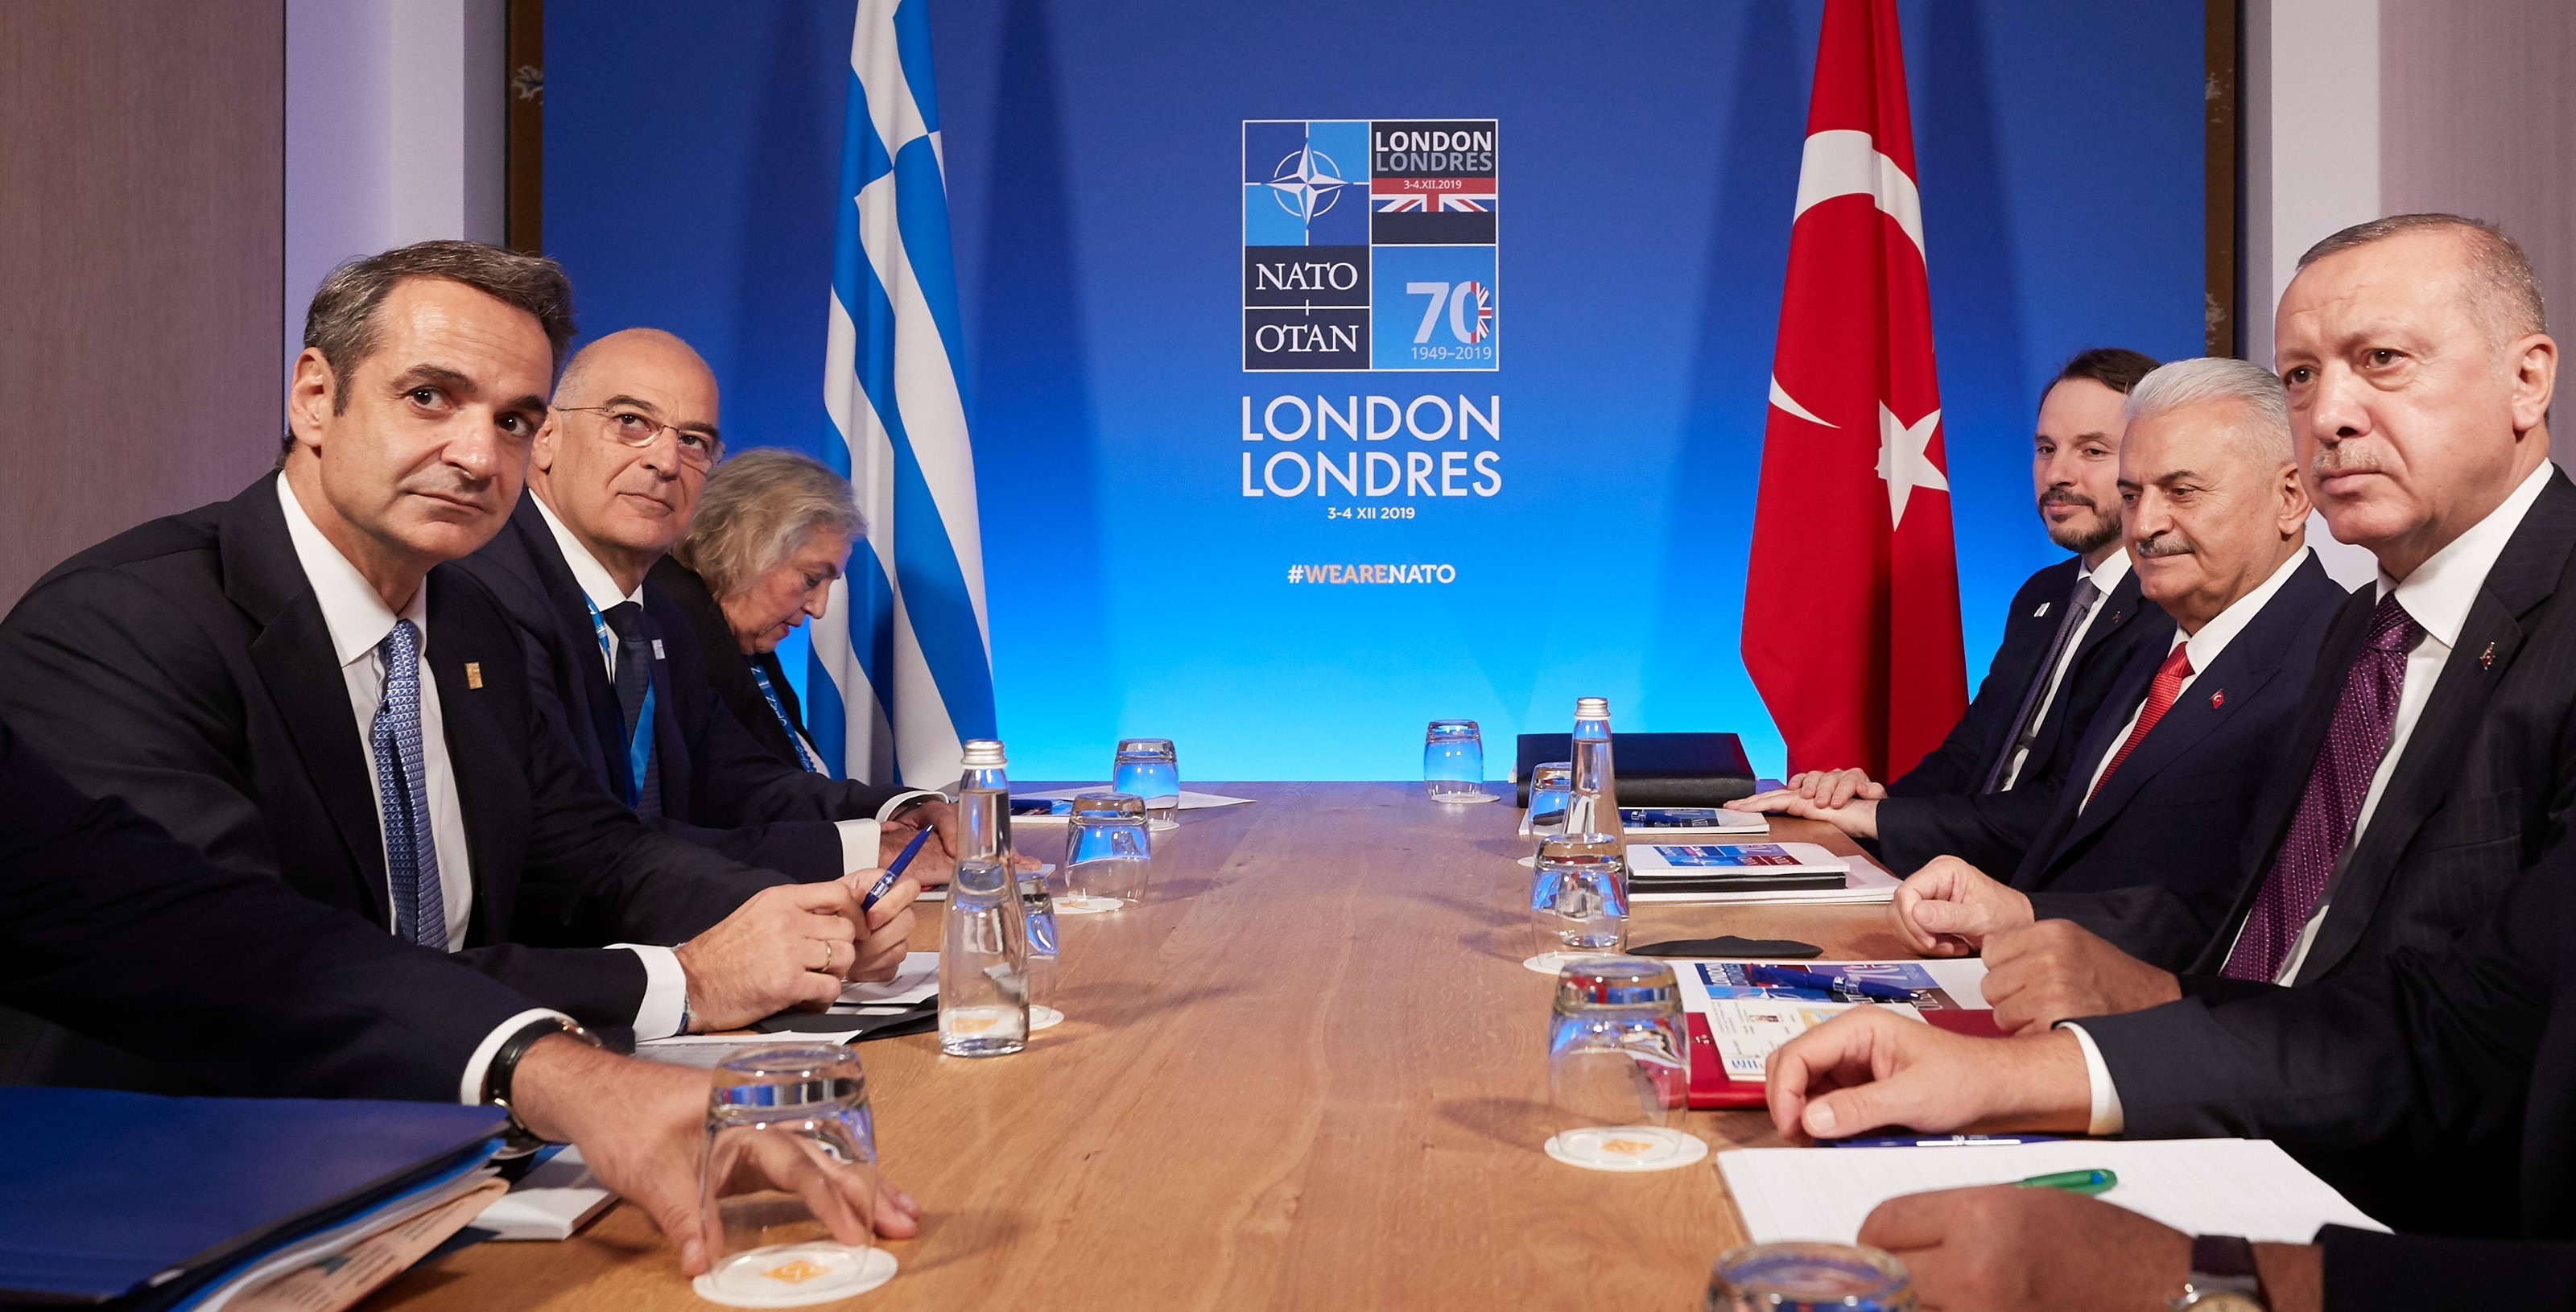 Μητσοτάκης – Ερντογάν συνάντηση: Οι δηλώσεις του πρωθυπουργού μετά το τετ α τετ στο Λονδίνο